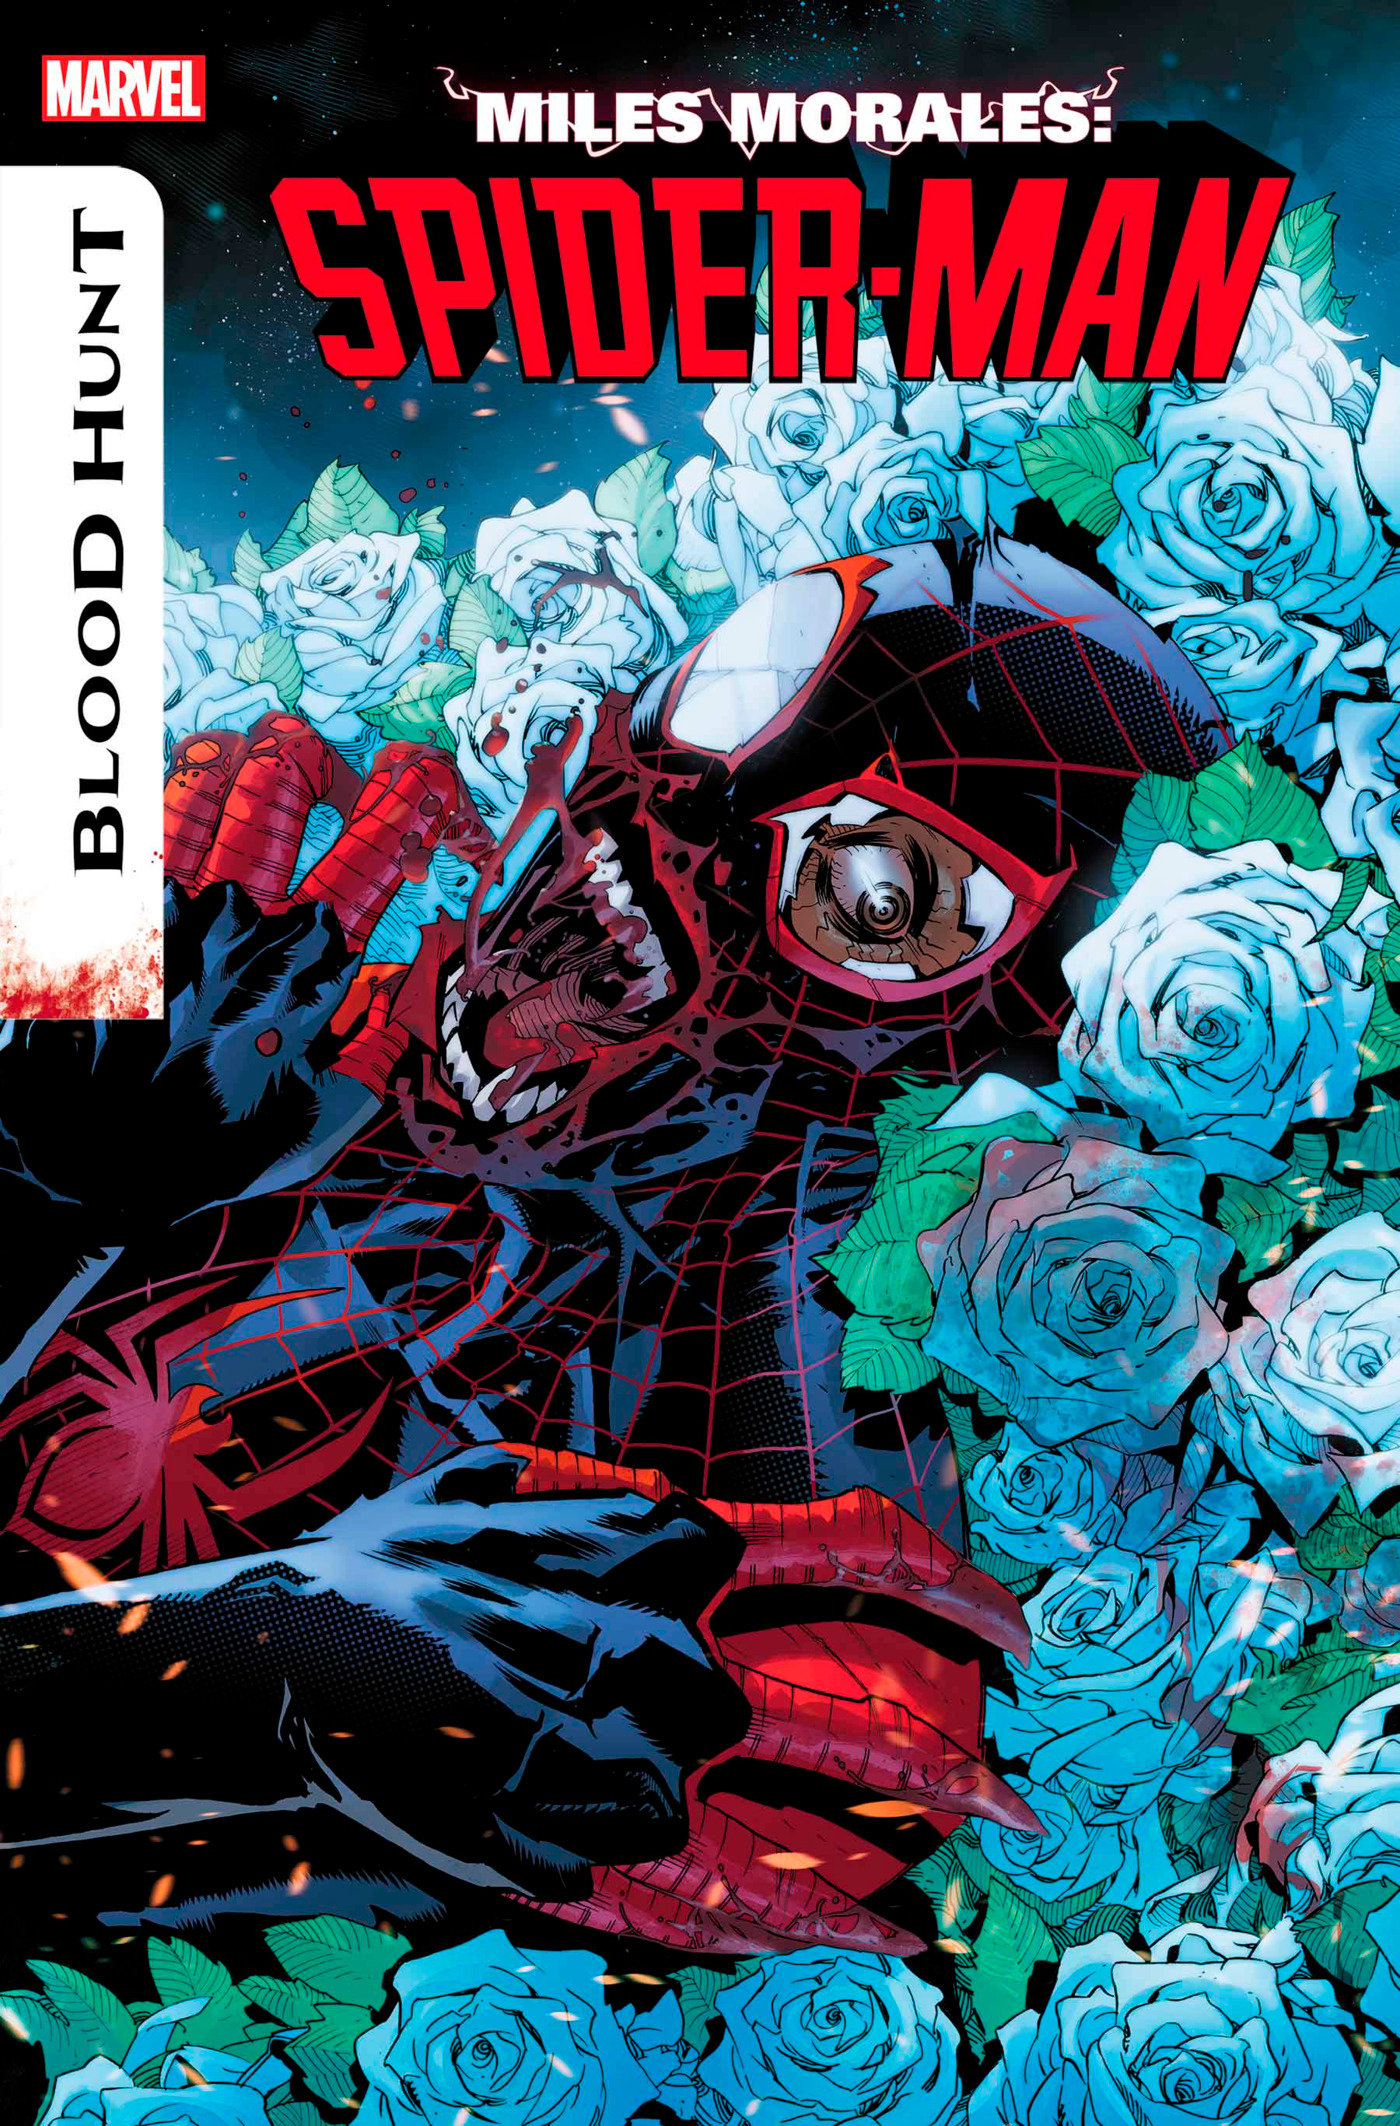 Miles Morales: Spider-Man #22 (Blood Hunt)